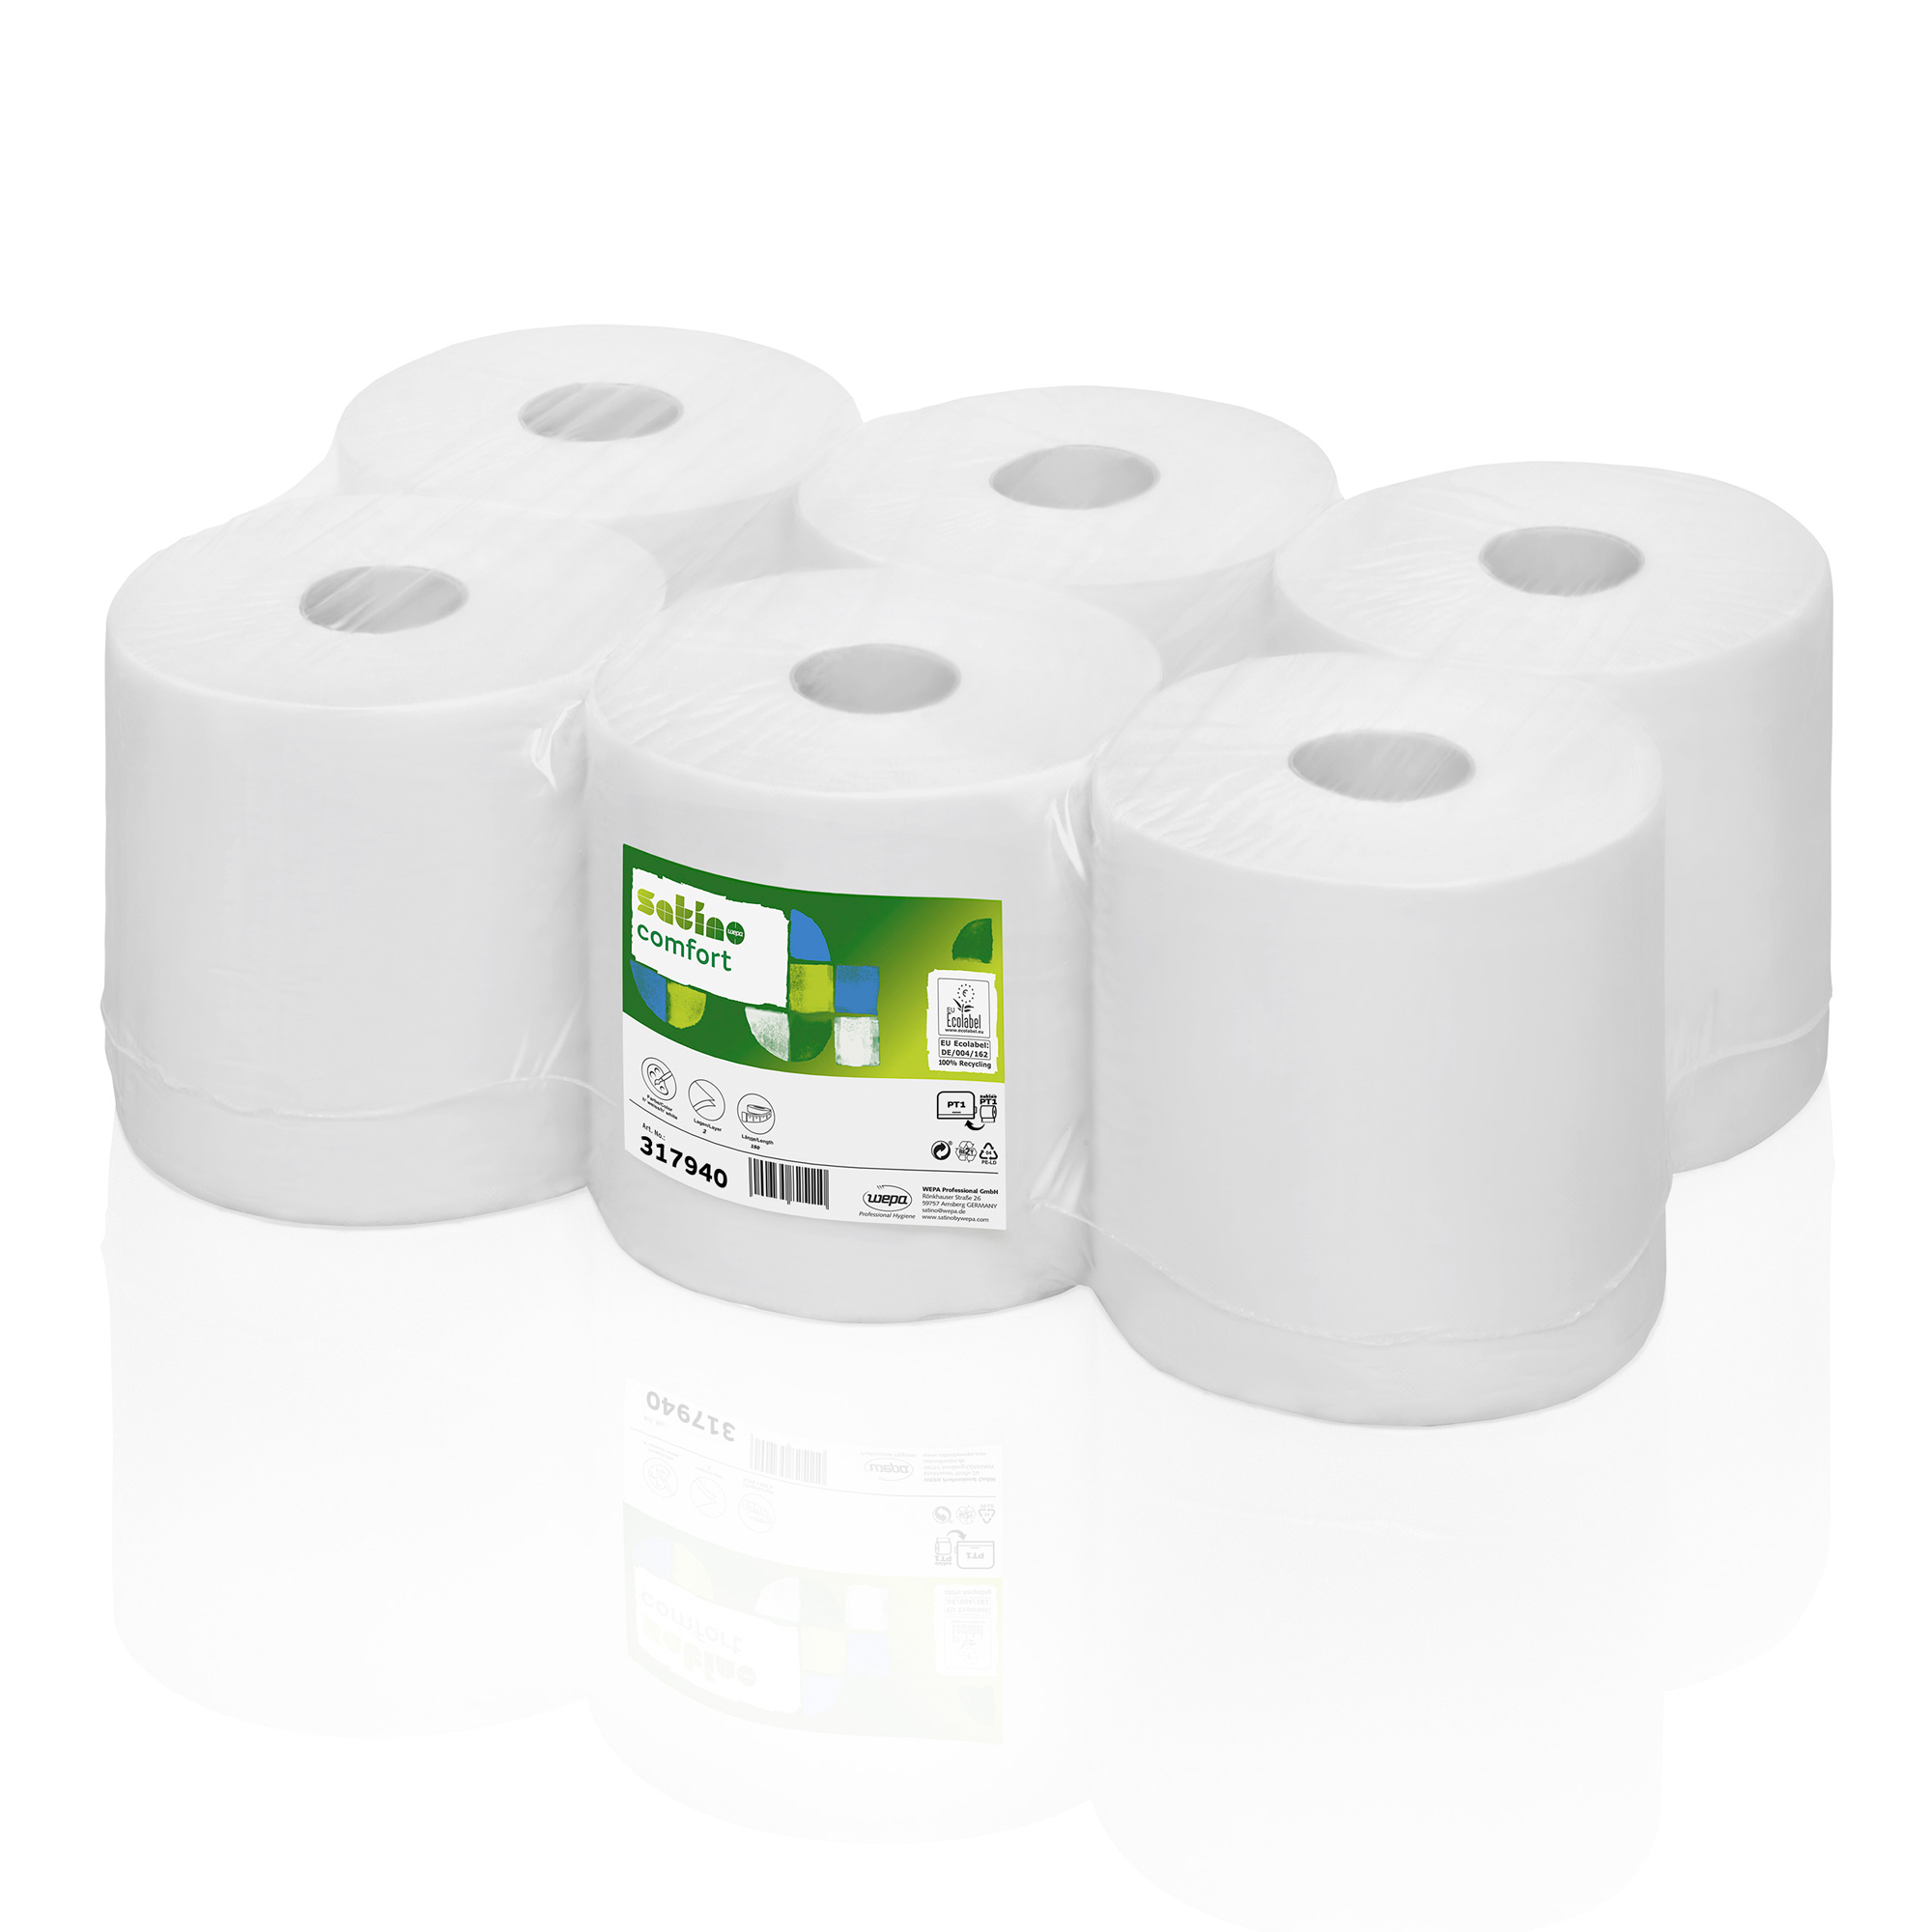 Satino by Wepa comfort Handtuchrollen Recycling Tissue, 2-lagig, 150 Meter 6 Rollen 317940_1